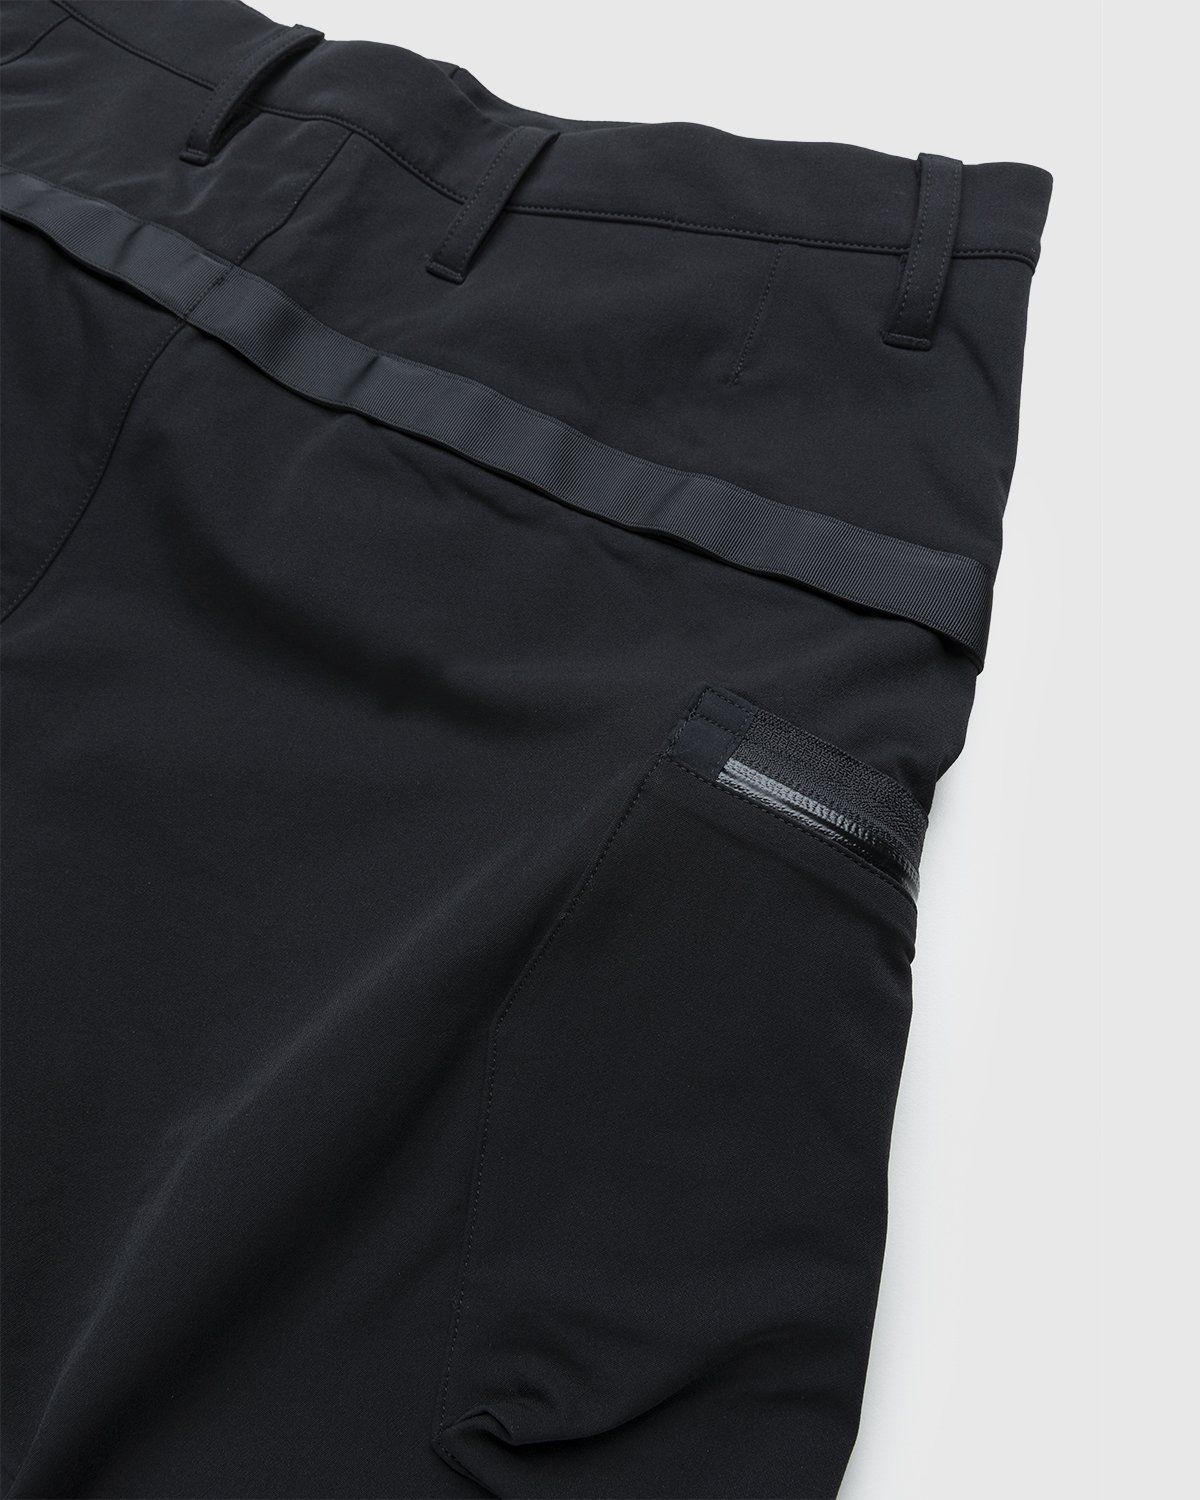 ACRONYM – P41-DS Pant Black - Pants - Black - Image 4